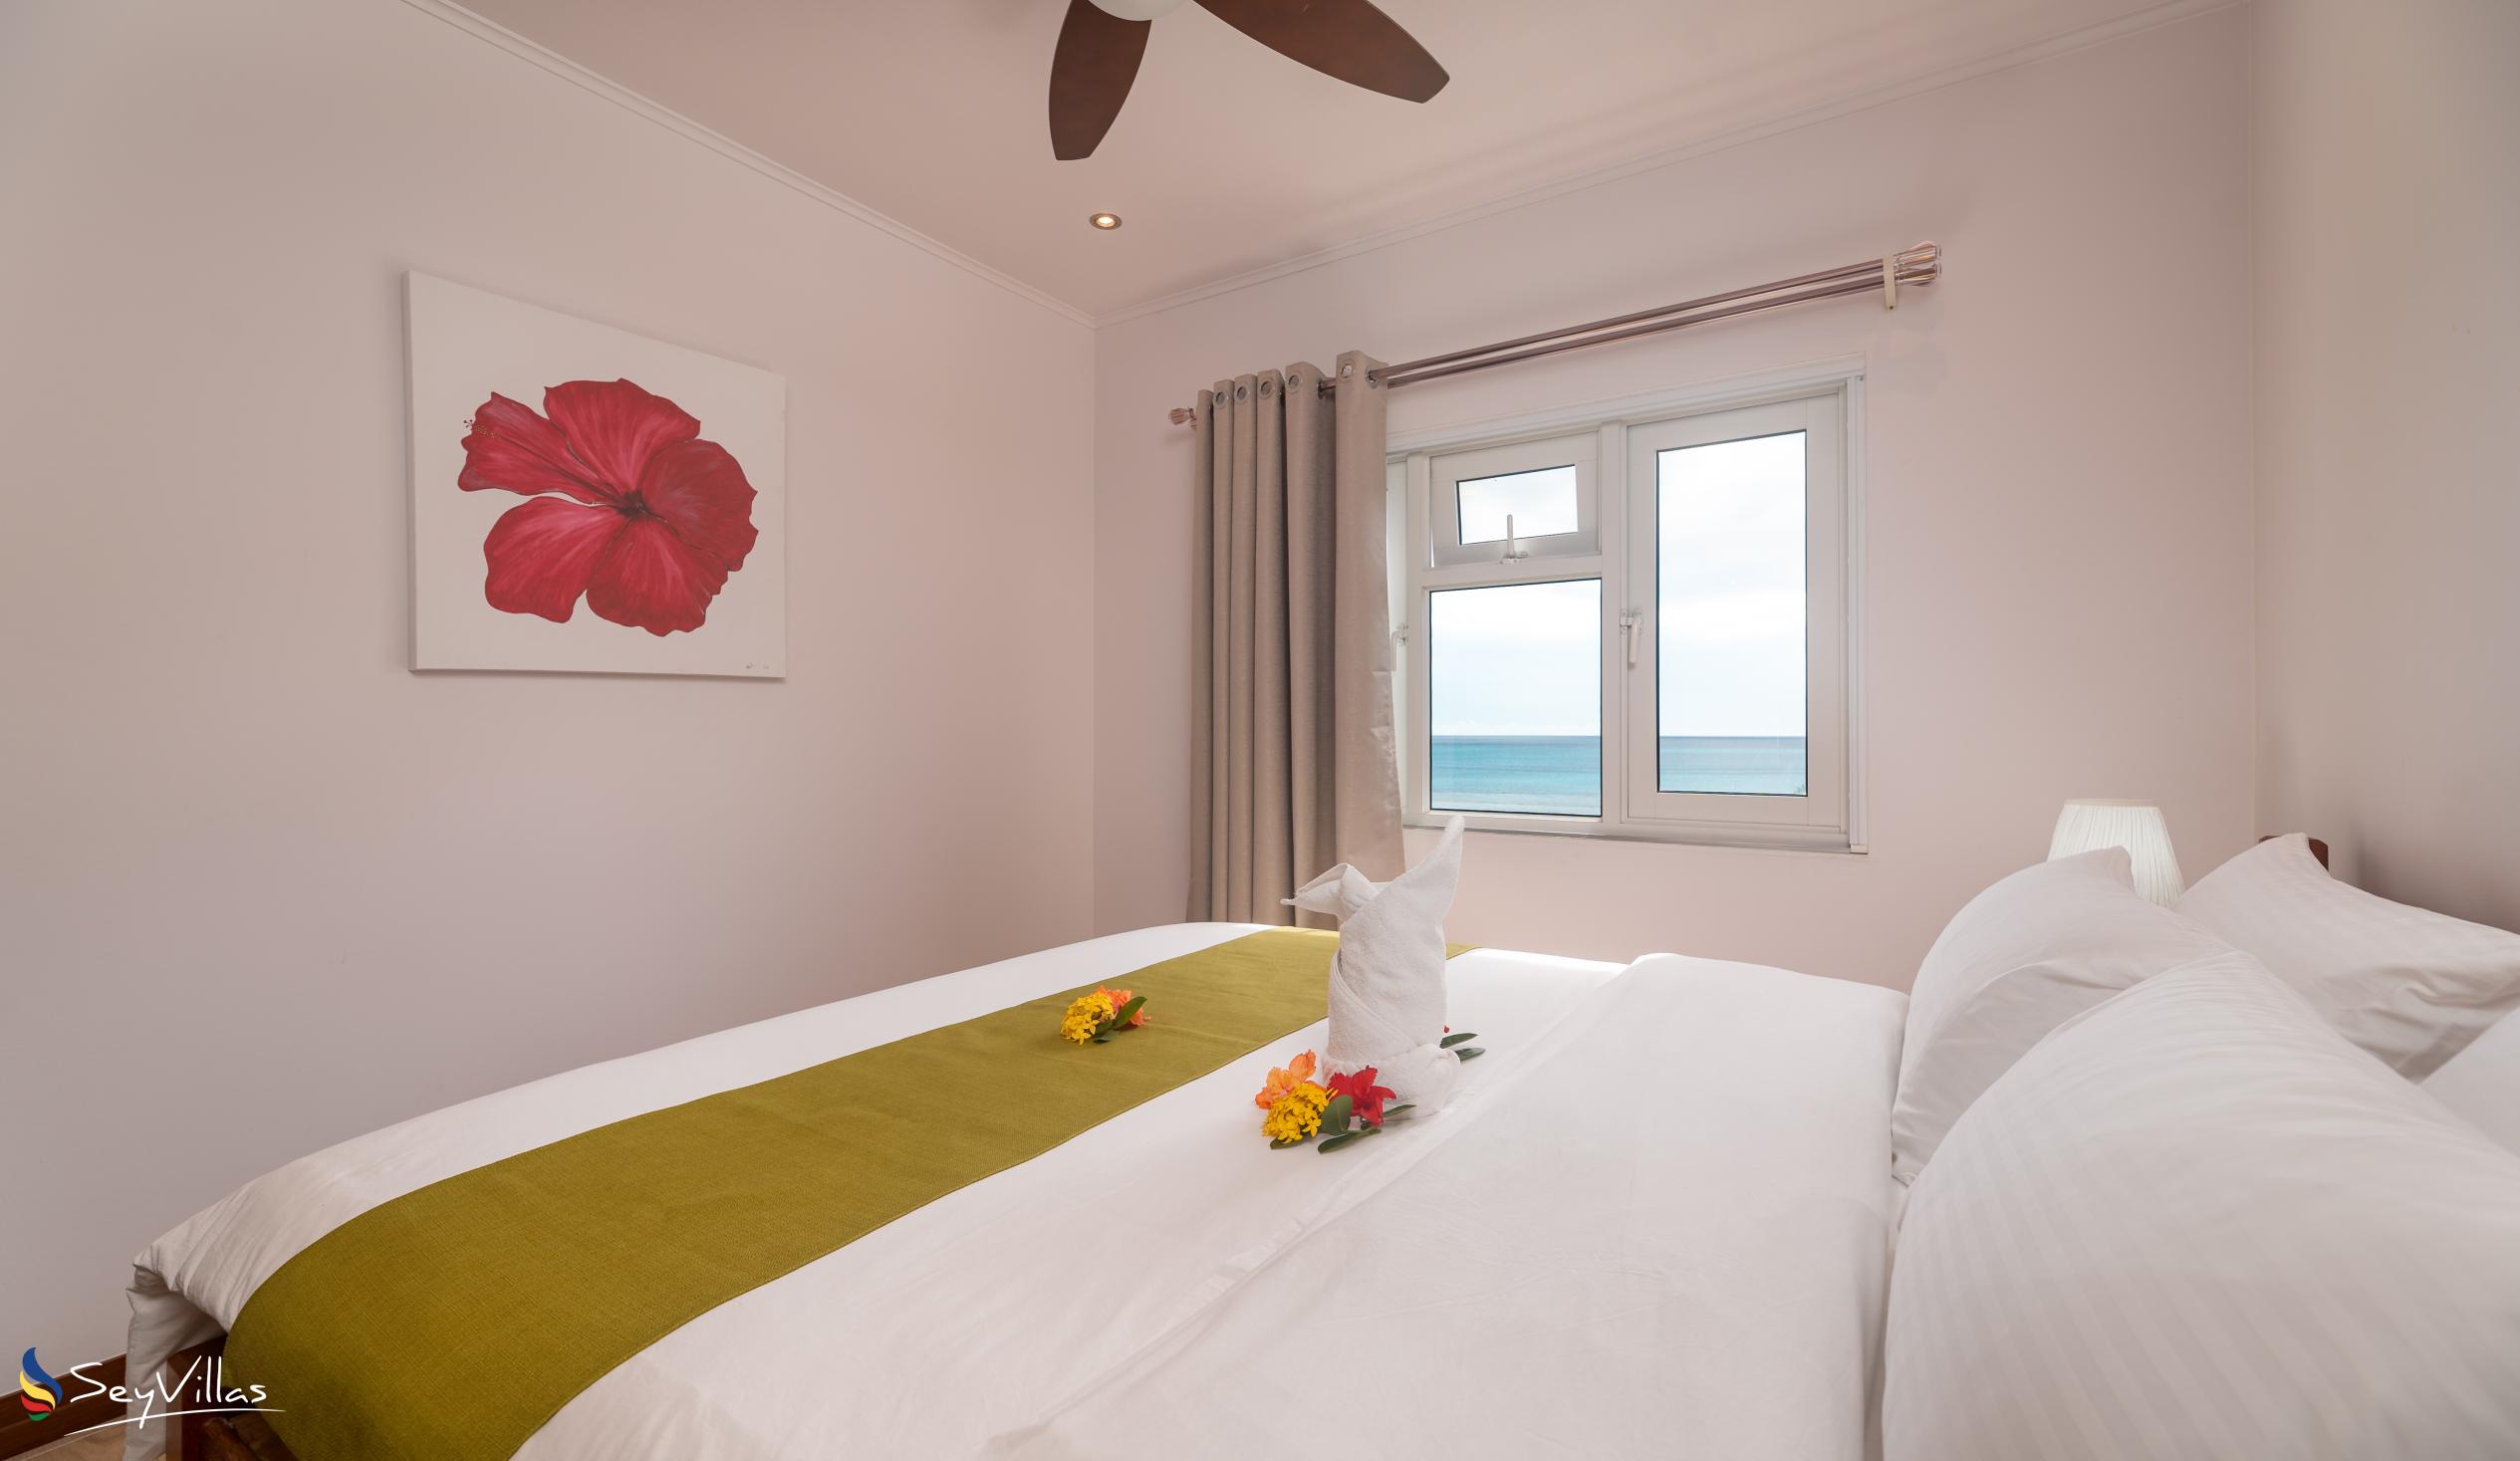 Foto 32: Crystal Shores Self Catering Apartments - Appartement avec vue sur la mer - Mahé (Seychelles)